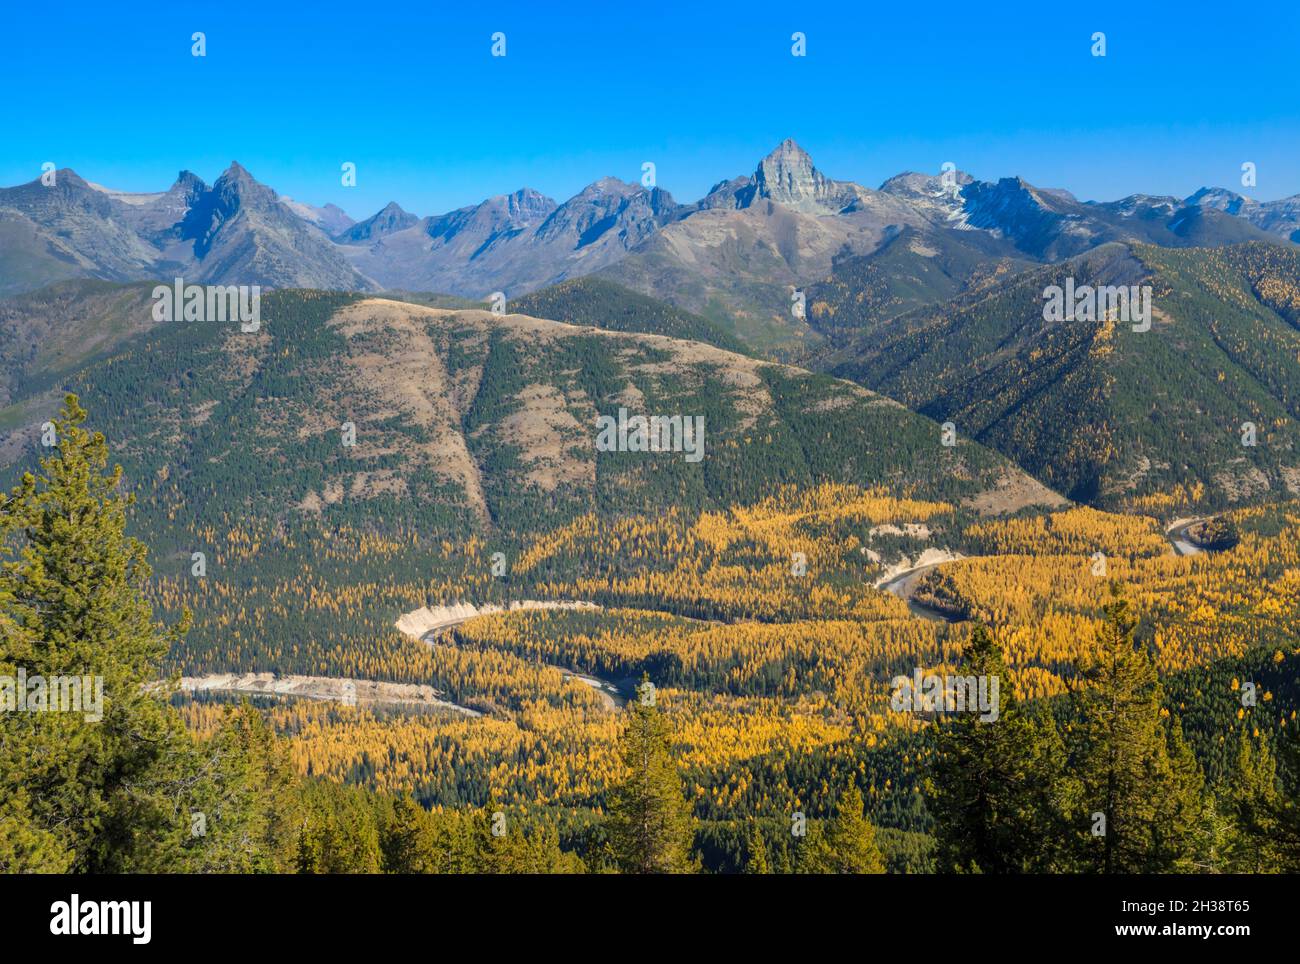 Die Gipfel des Gletschernationalparks, die über der herbstlichen Lärche des Flathead River Valley der Mittelgabel emporragen, vom Grant Ridge in der Nähe von essex, montana, aus gesehen Stockfoto